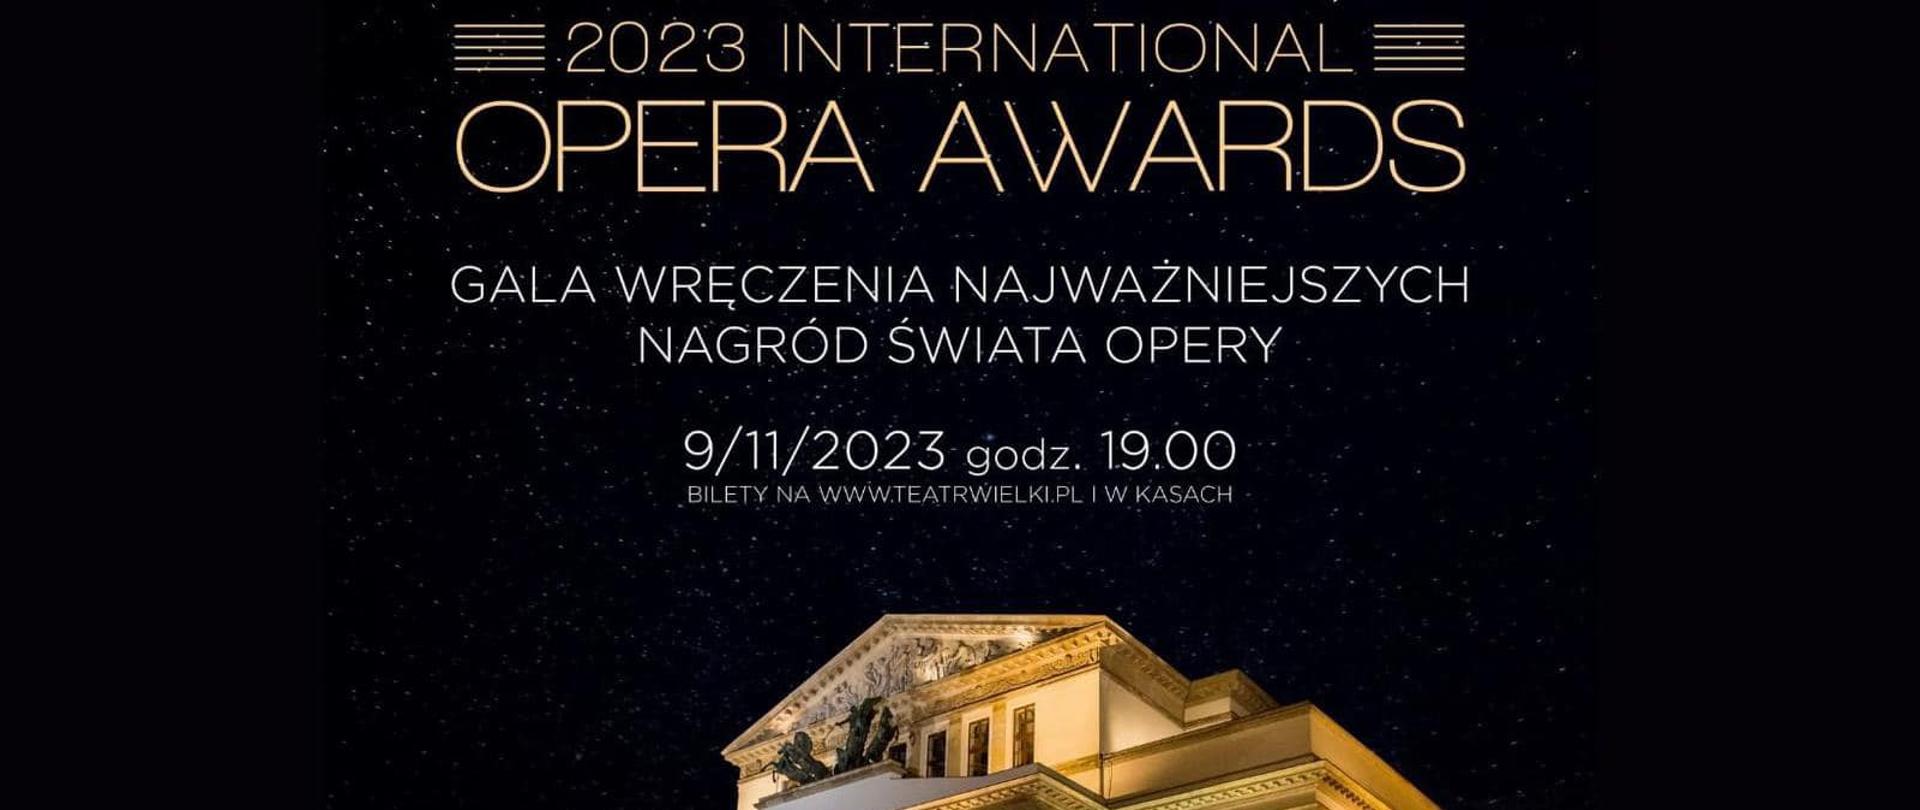 Opera Awards, zdjęcie z rozdania nagród w Teatrze Wielkim - Operze Narodowej.